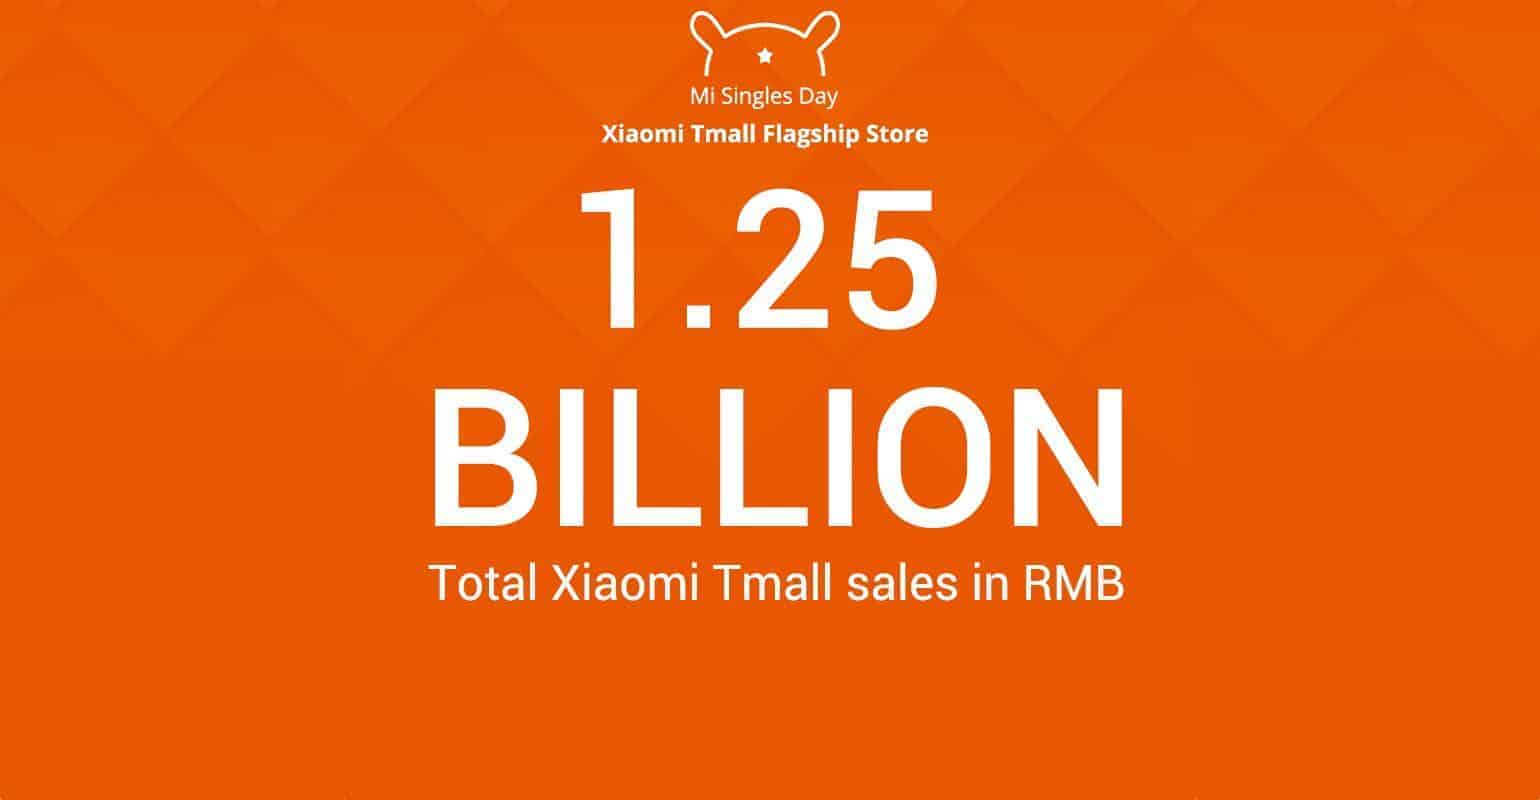 Xiaomi top verkoper op Singles Day- 1,25 miljard omzet